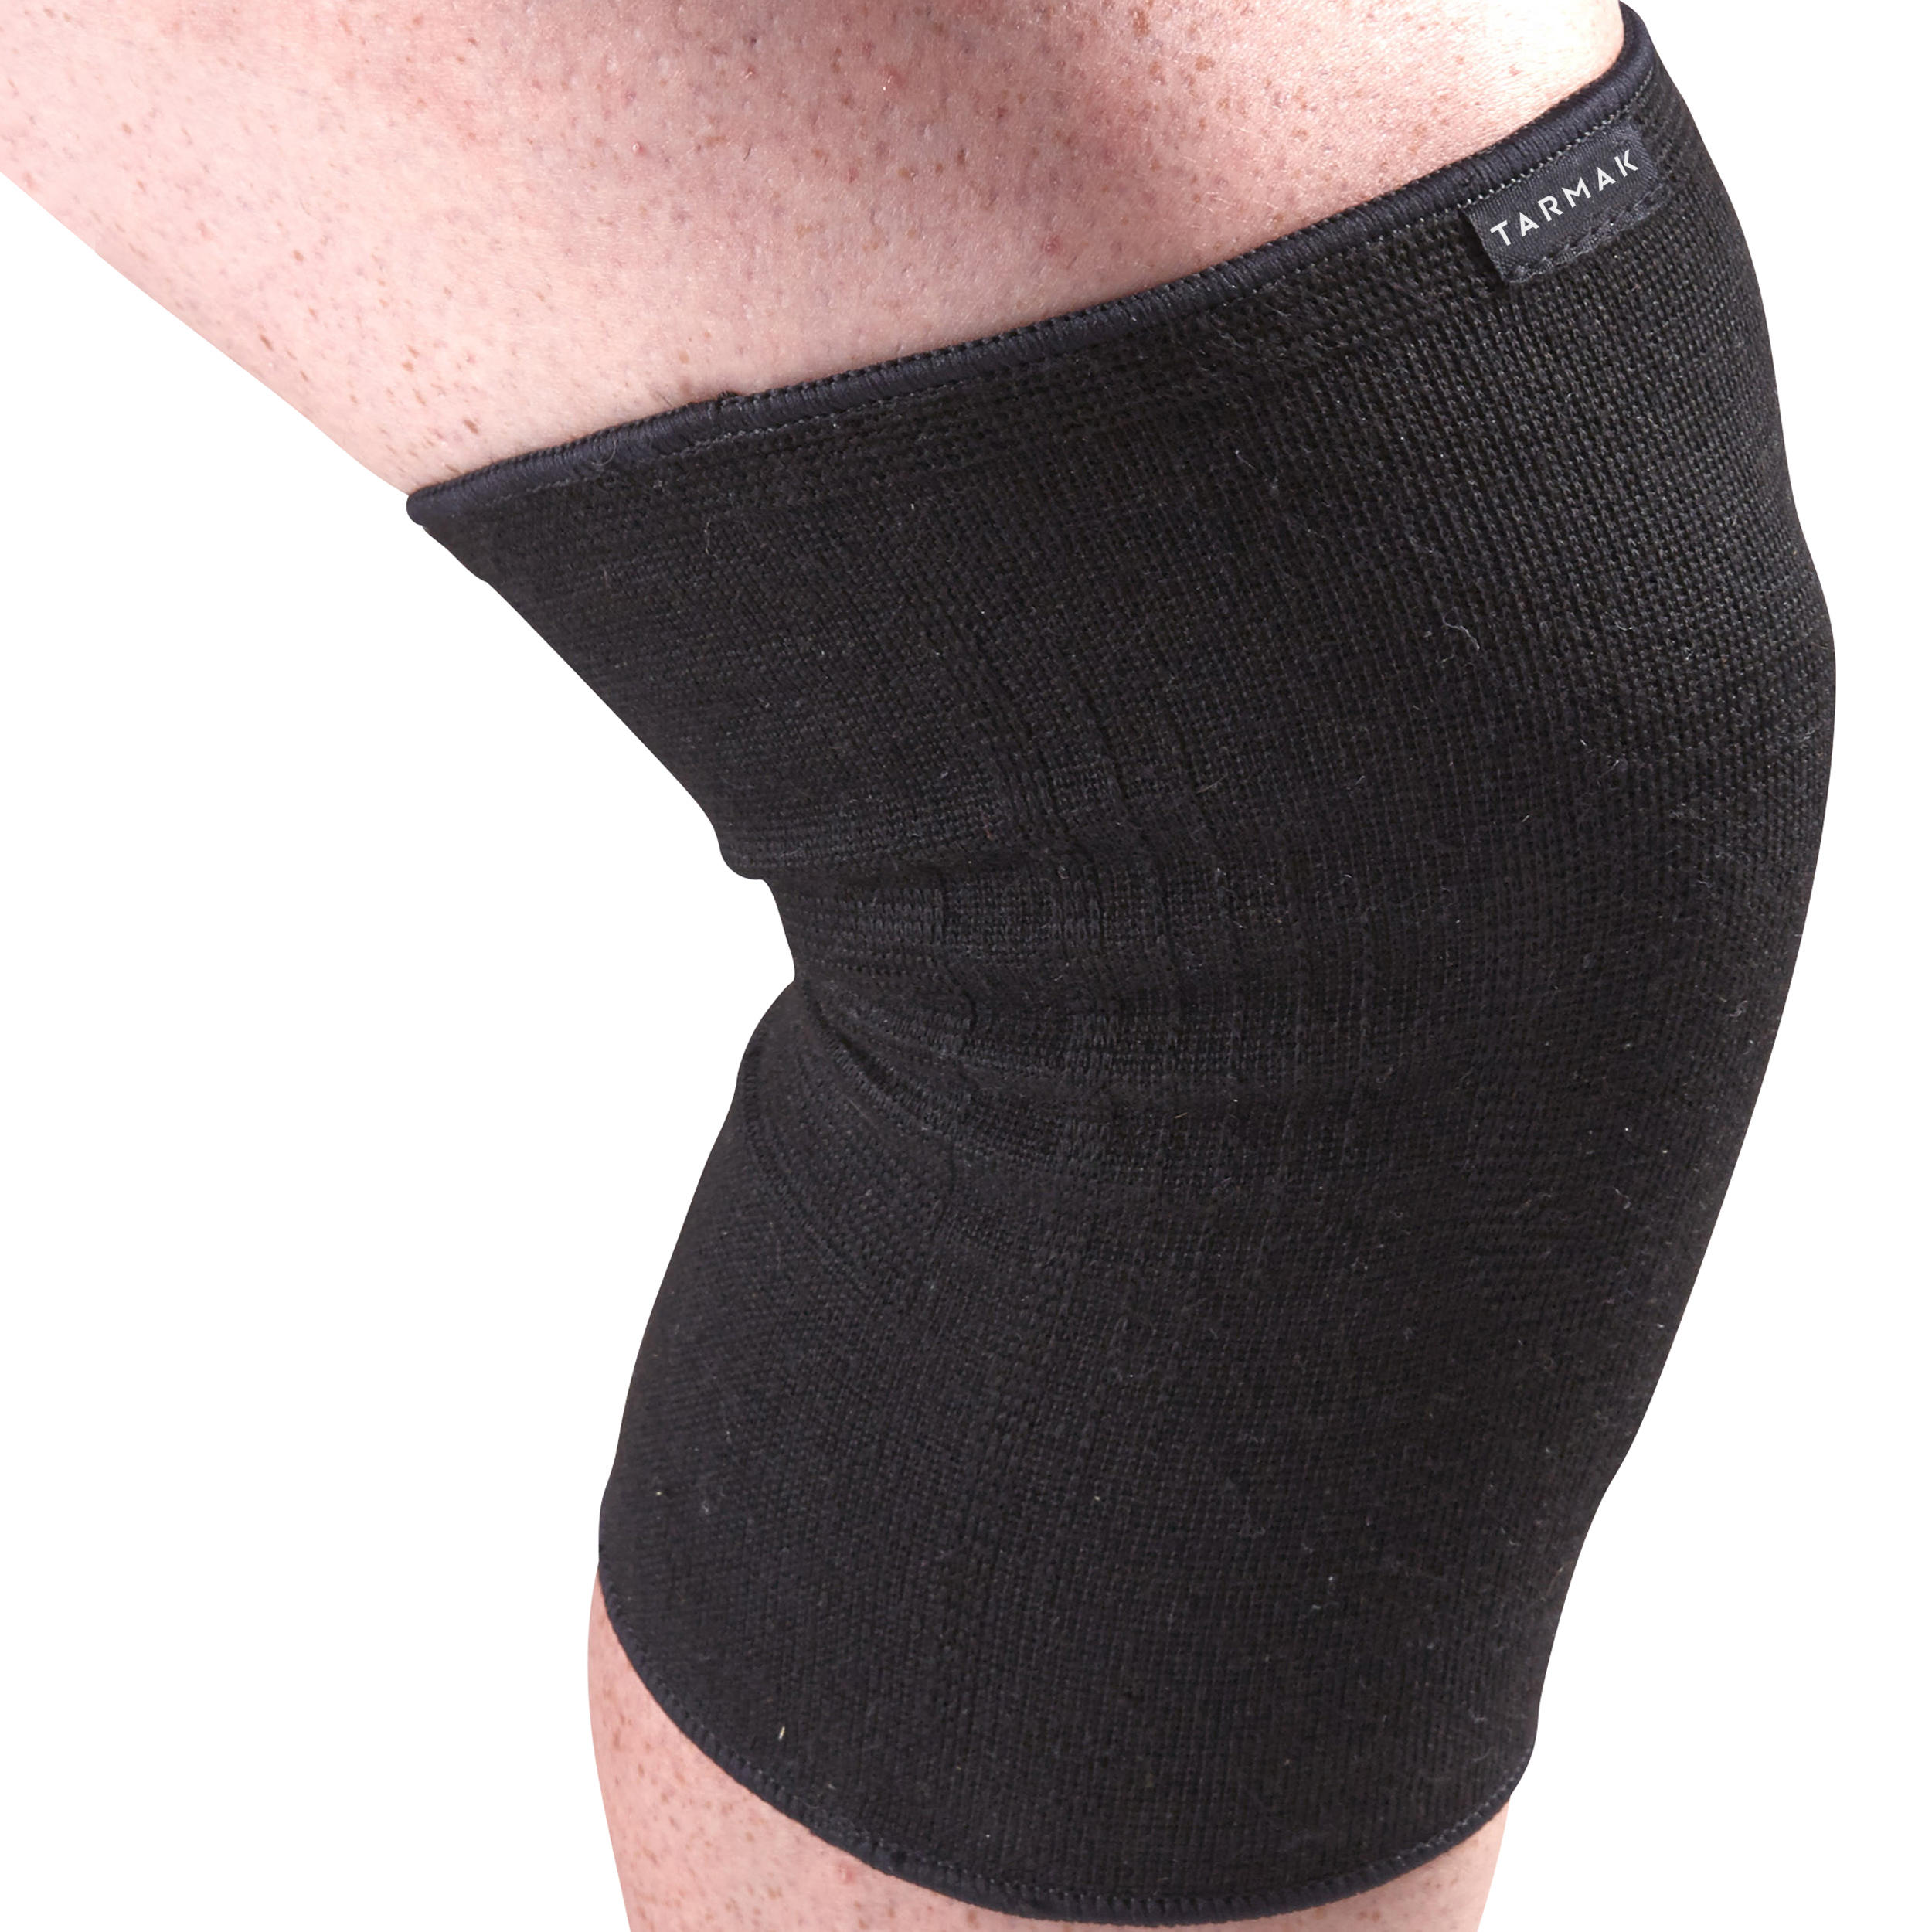 decathlon knee brace